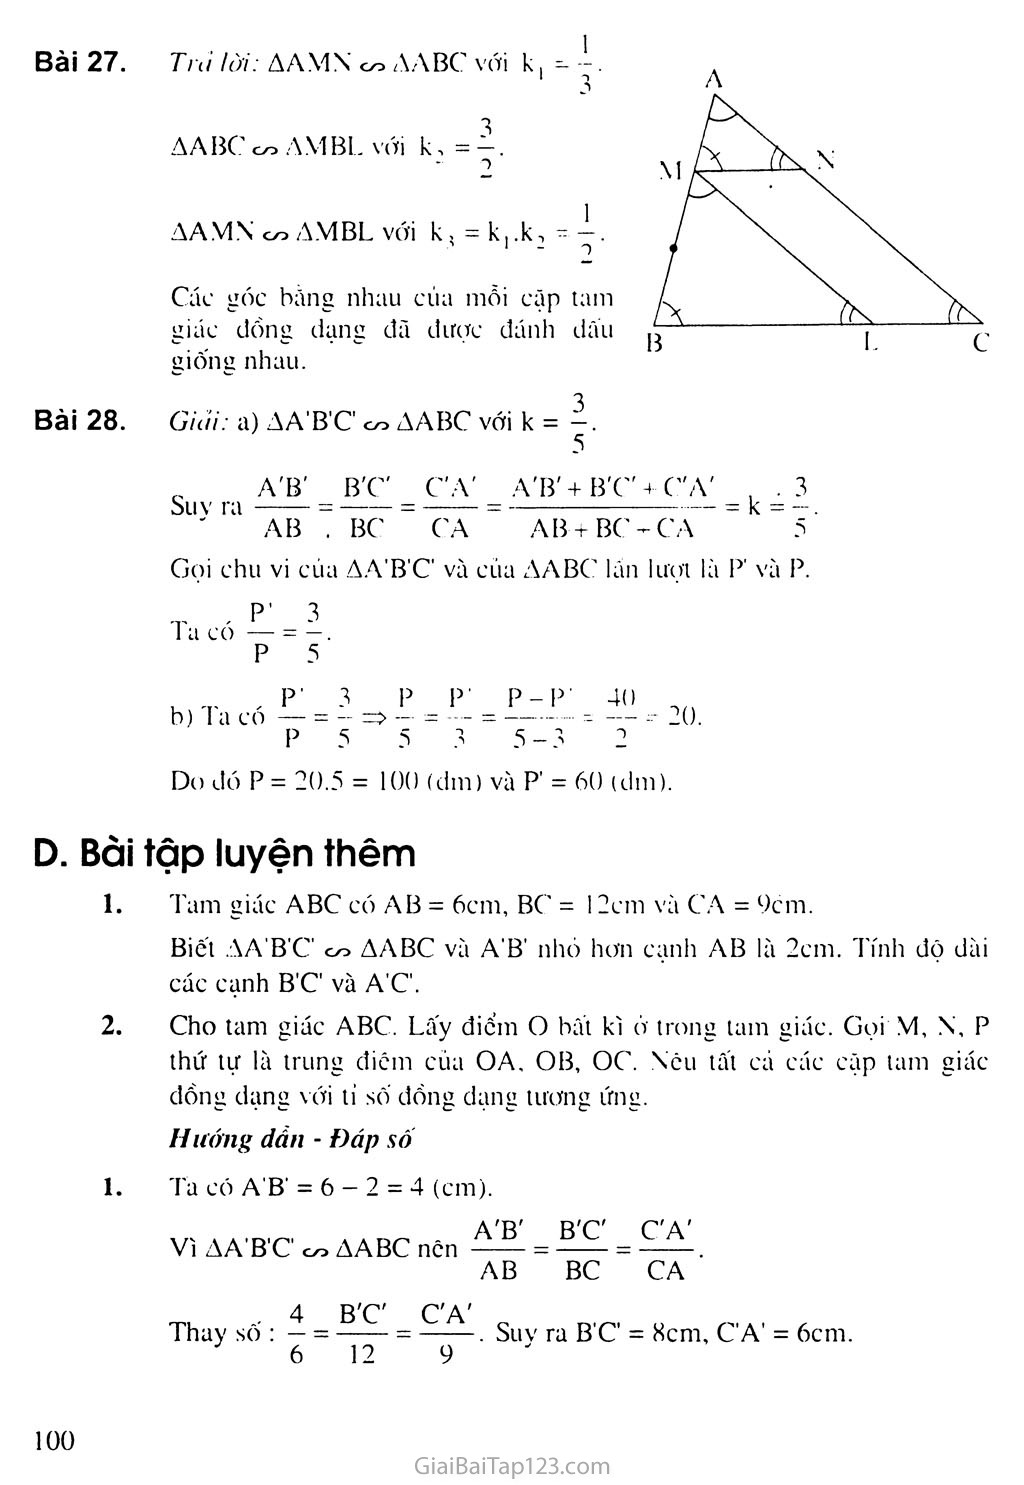 Bài 4. Khái niệm hai tam giác đồng dạng trang 3